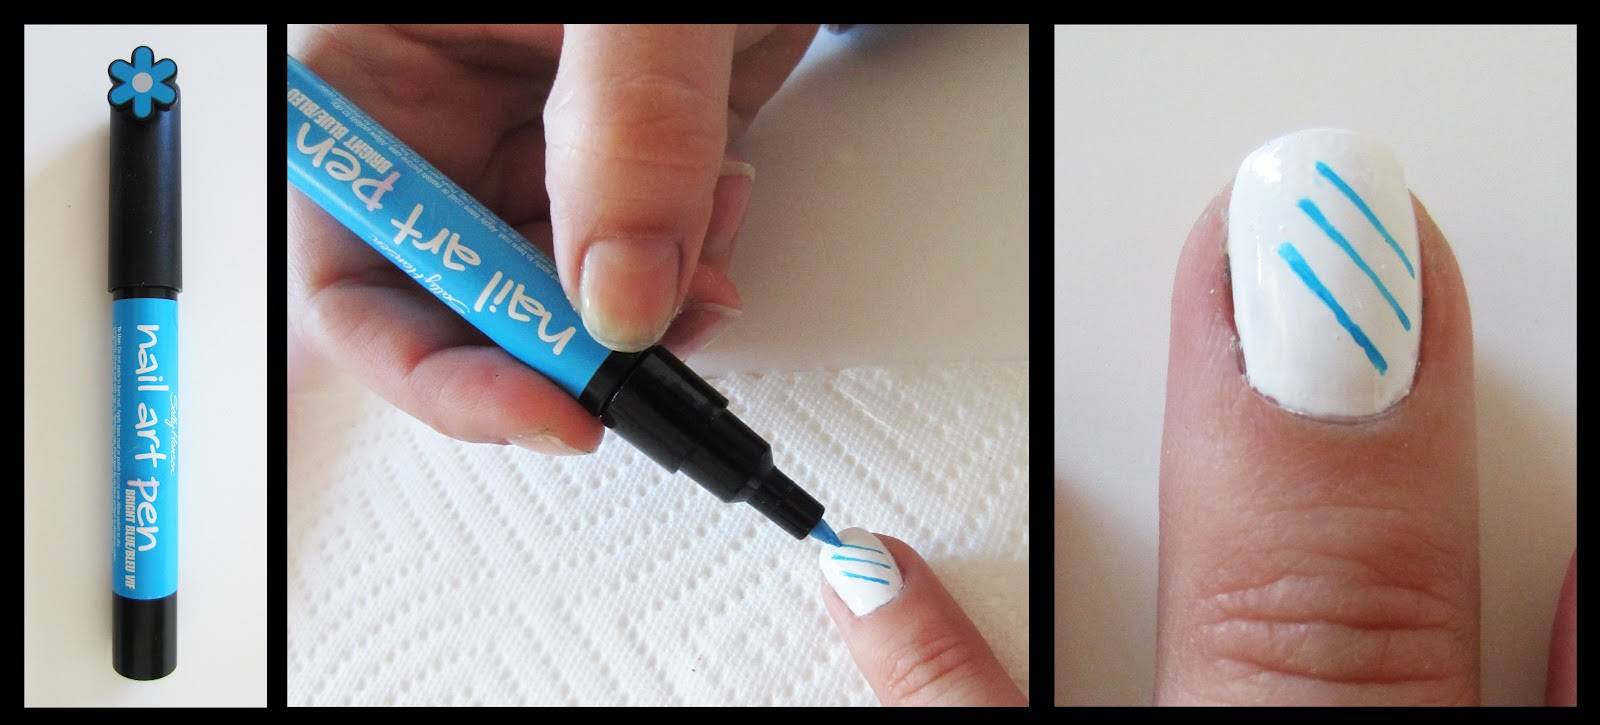 Гелевая ручка как инструмент для художественной росписи ногтей